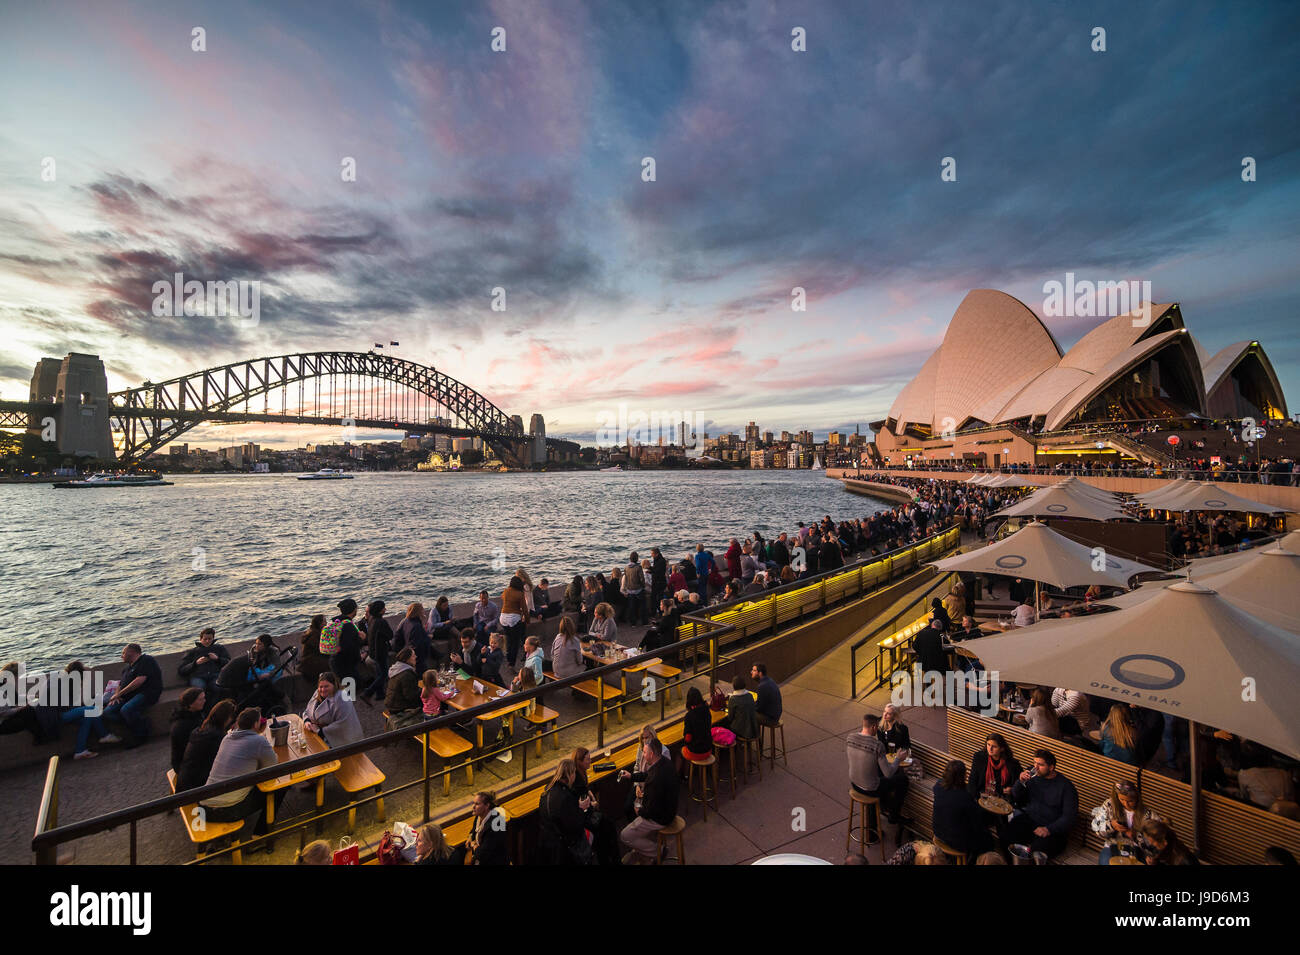 Le port de Sydney avec le Harbour Bridge et l'Opéra après le coucher du soleil, Sydney, Nouvelle-Galles du Sud, Australie, Pacifique Banque D'Images